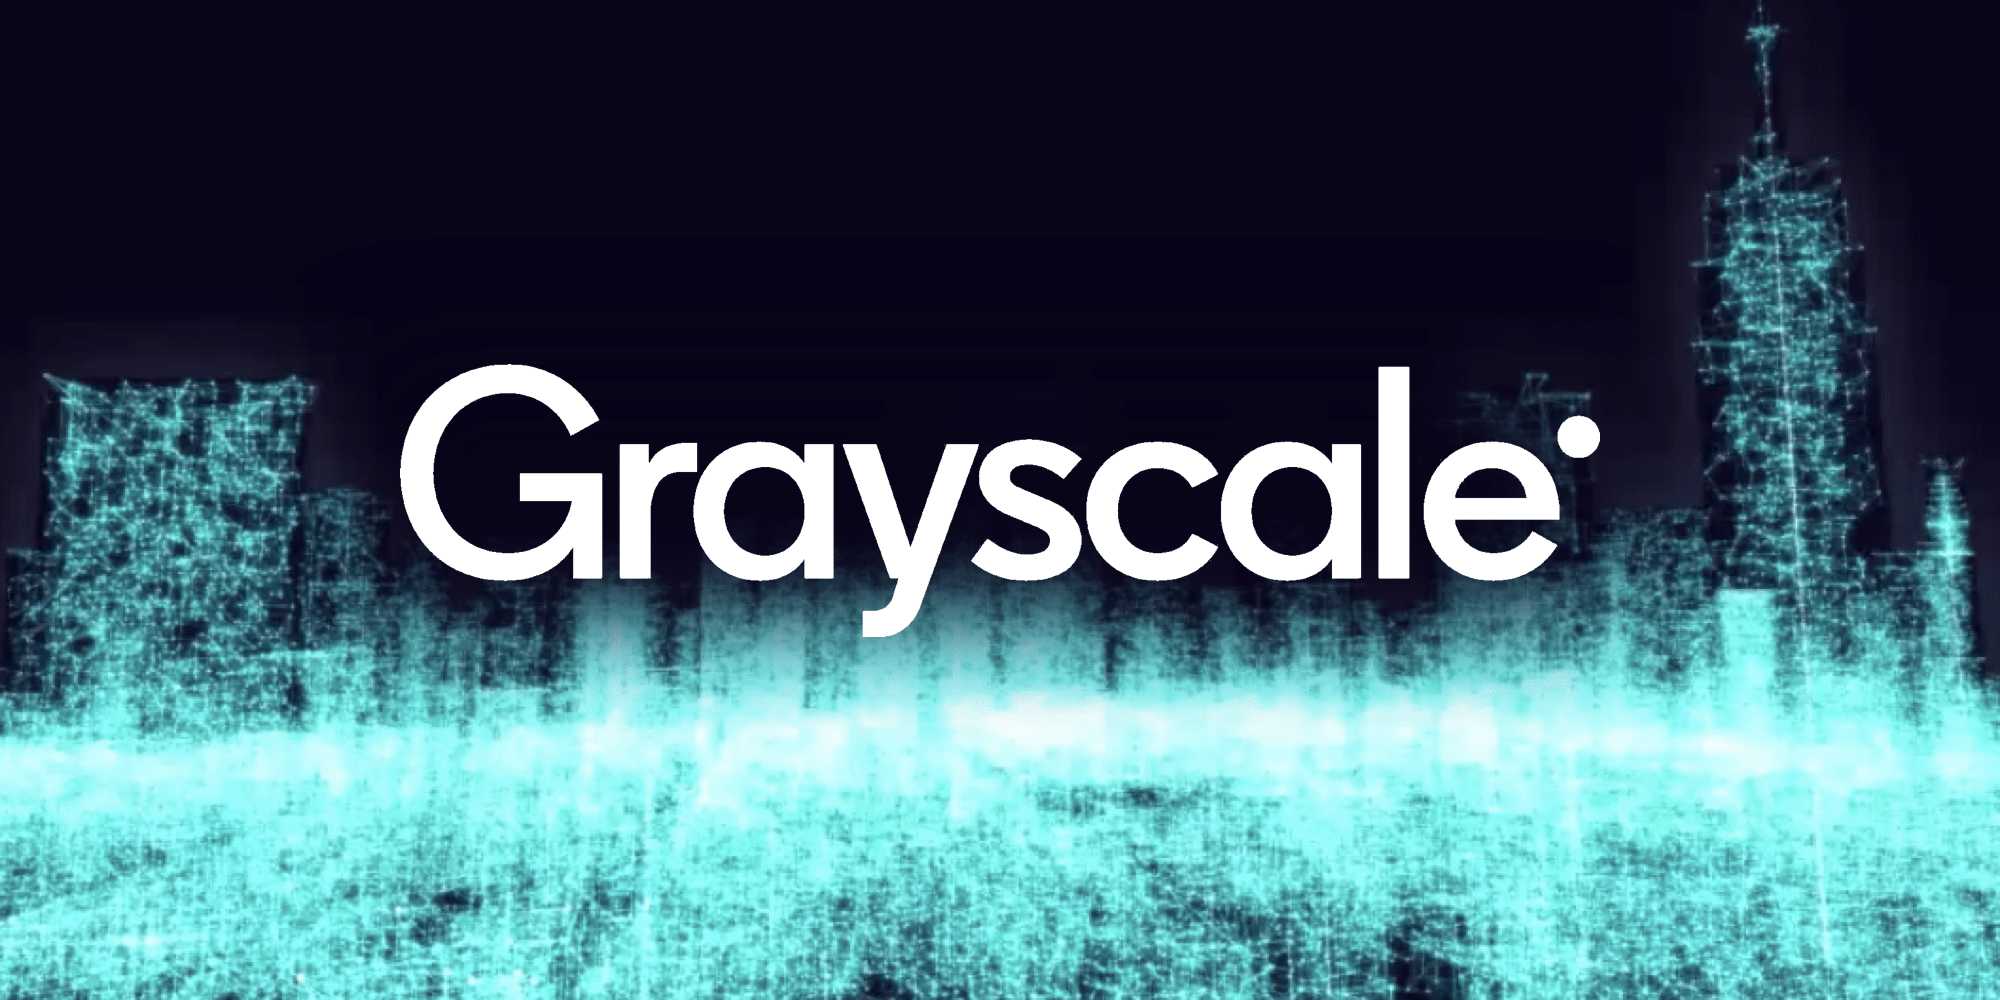 Grayscale Investments đã huy động hơn 1 tỷ đô la đầu tư mới trong quý 3 năm nay.